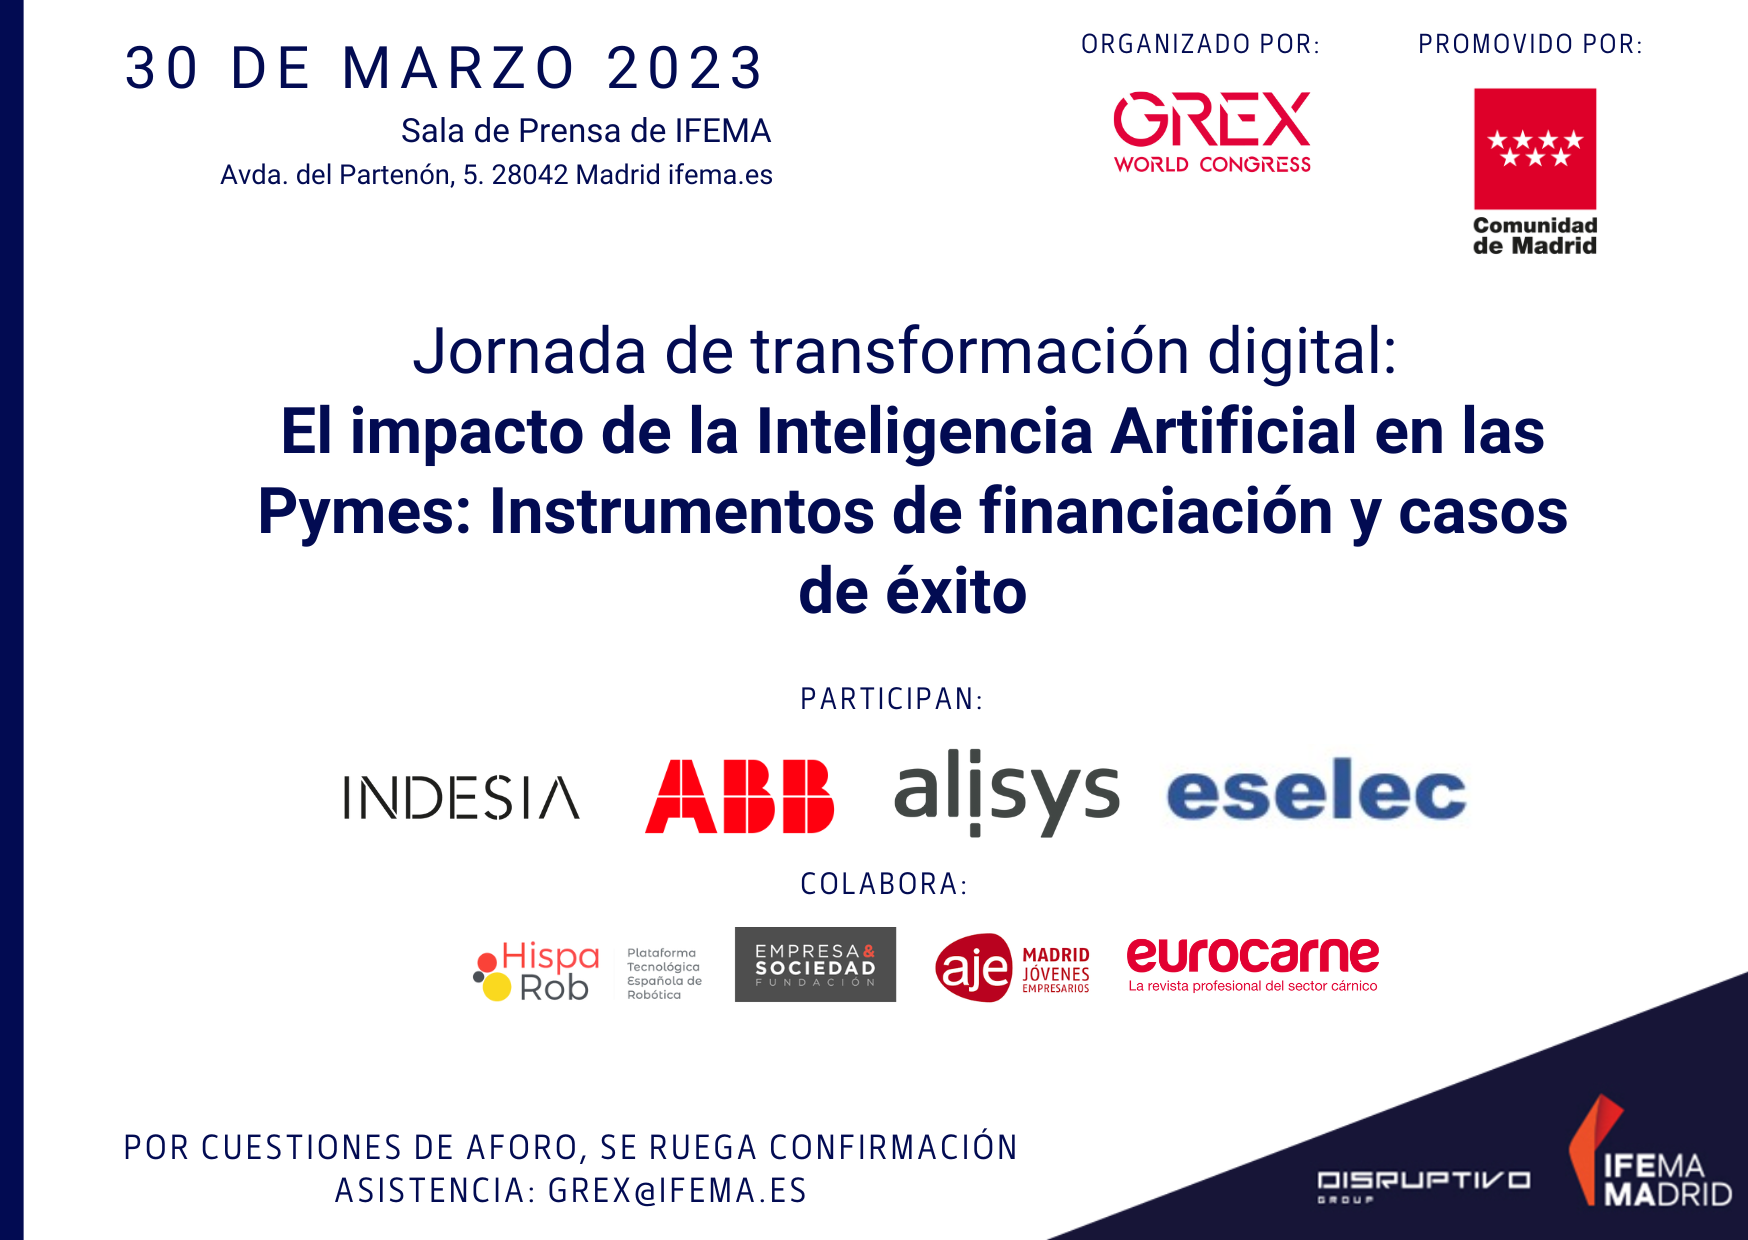 Colaboramos en la Jornada de transformación digital: “El impacto de la Inteligencia Artificial en las Pymes: Instrumentos de financiación y casos de éxito”